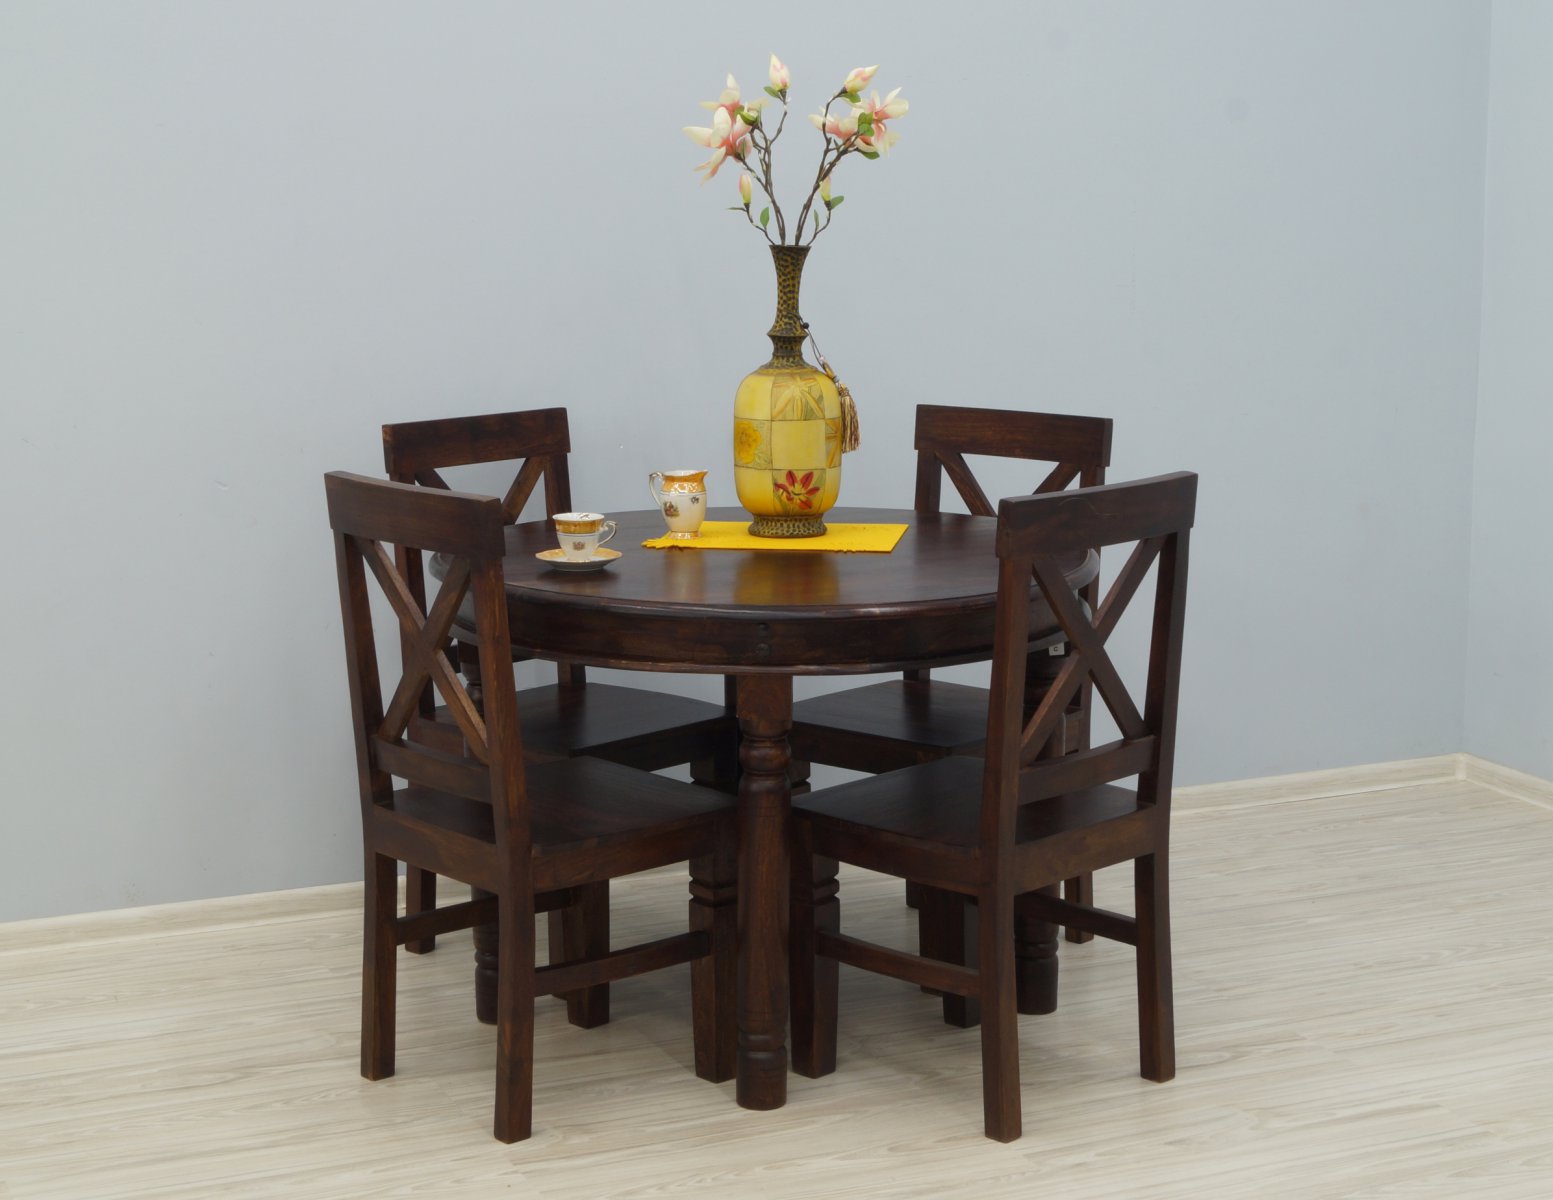 Komplet obiadowy kolonialny okrągły stół + 4 krzesła lite drewno palisander indyjski styl klasyczny